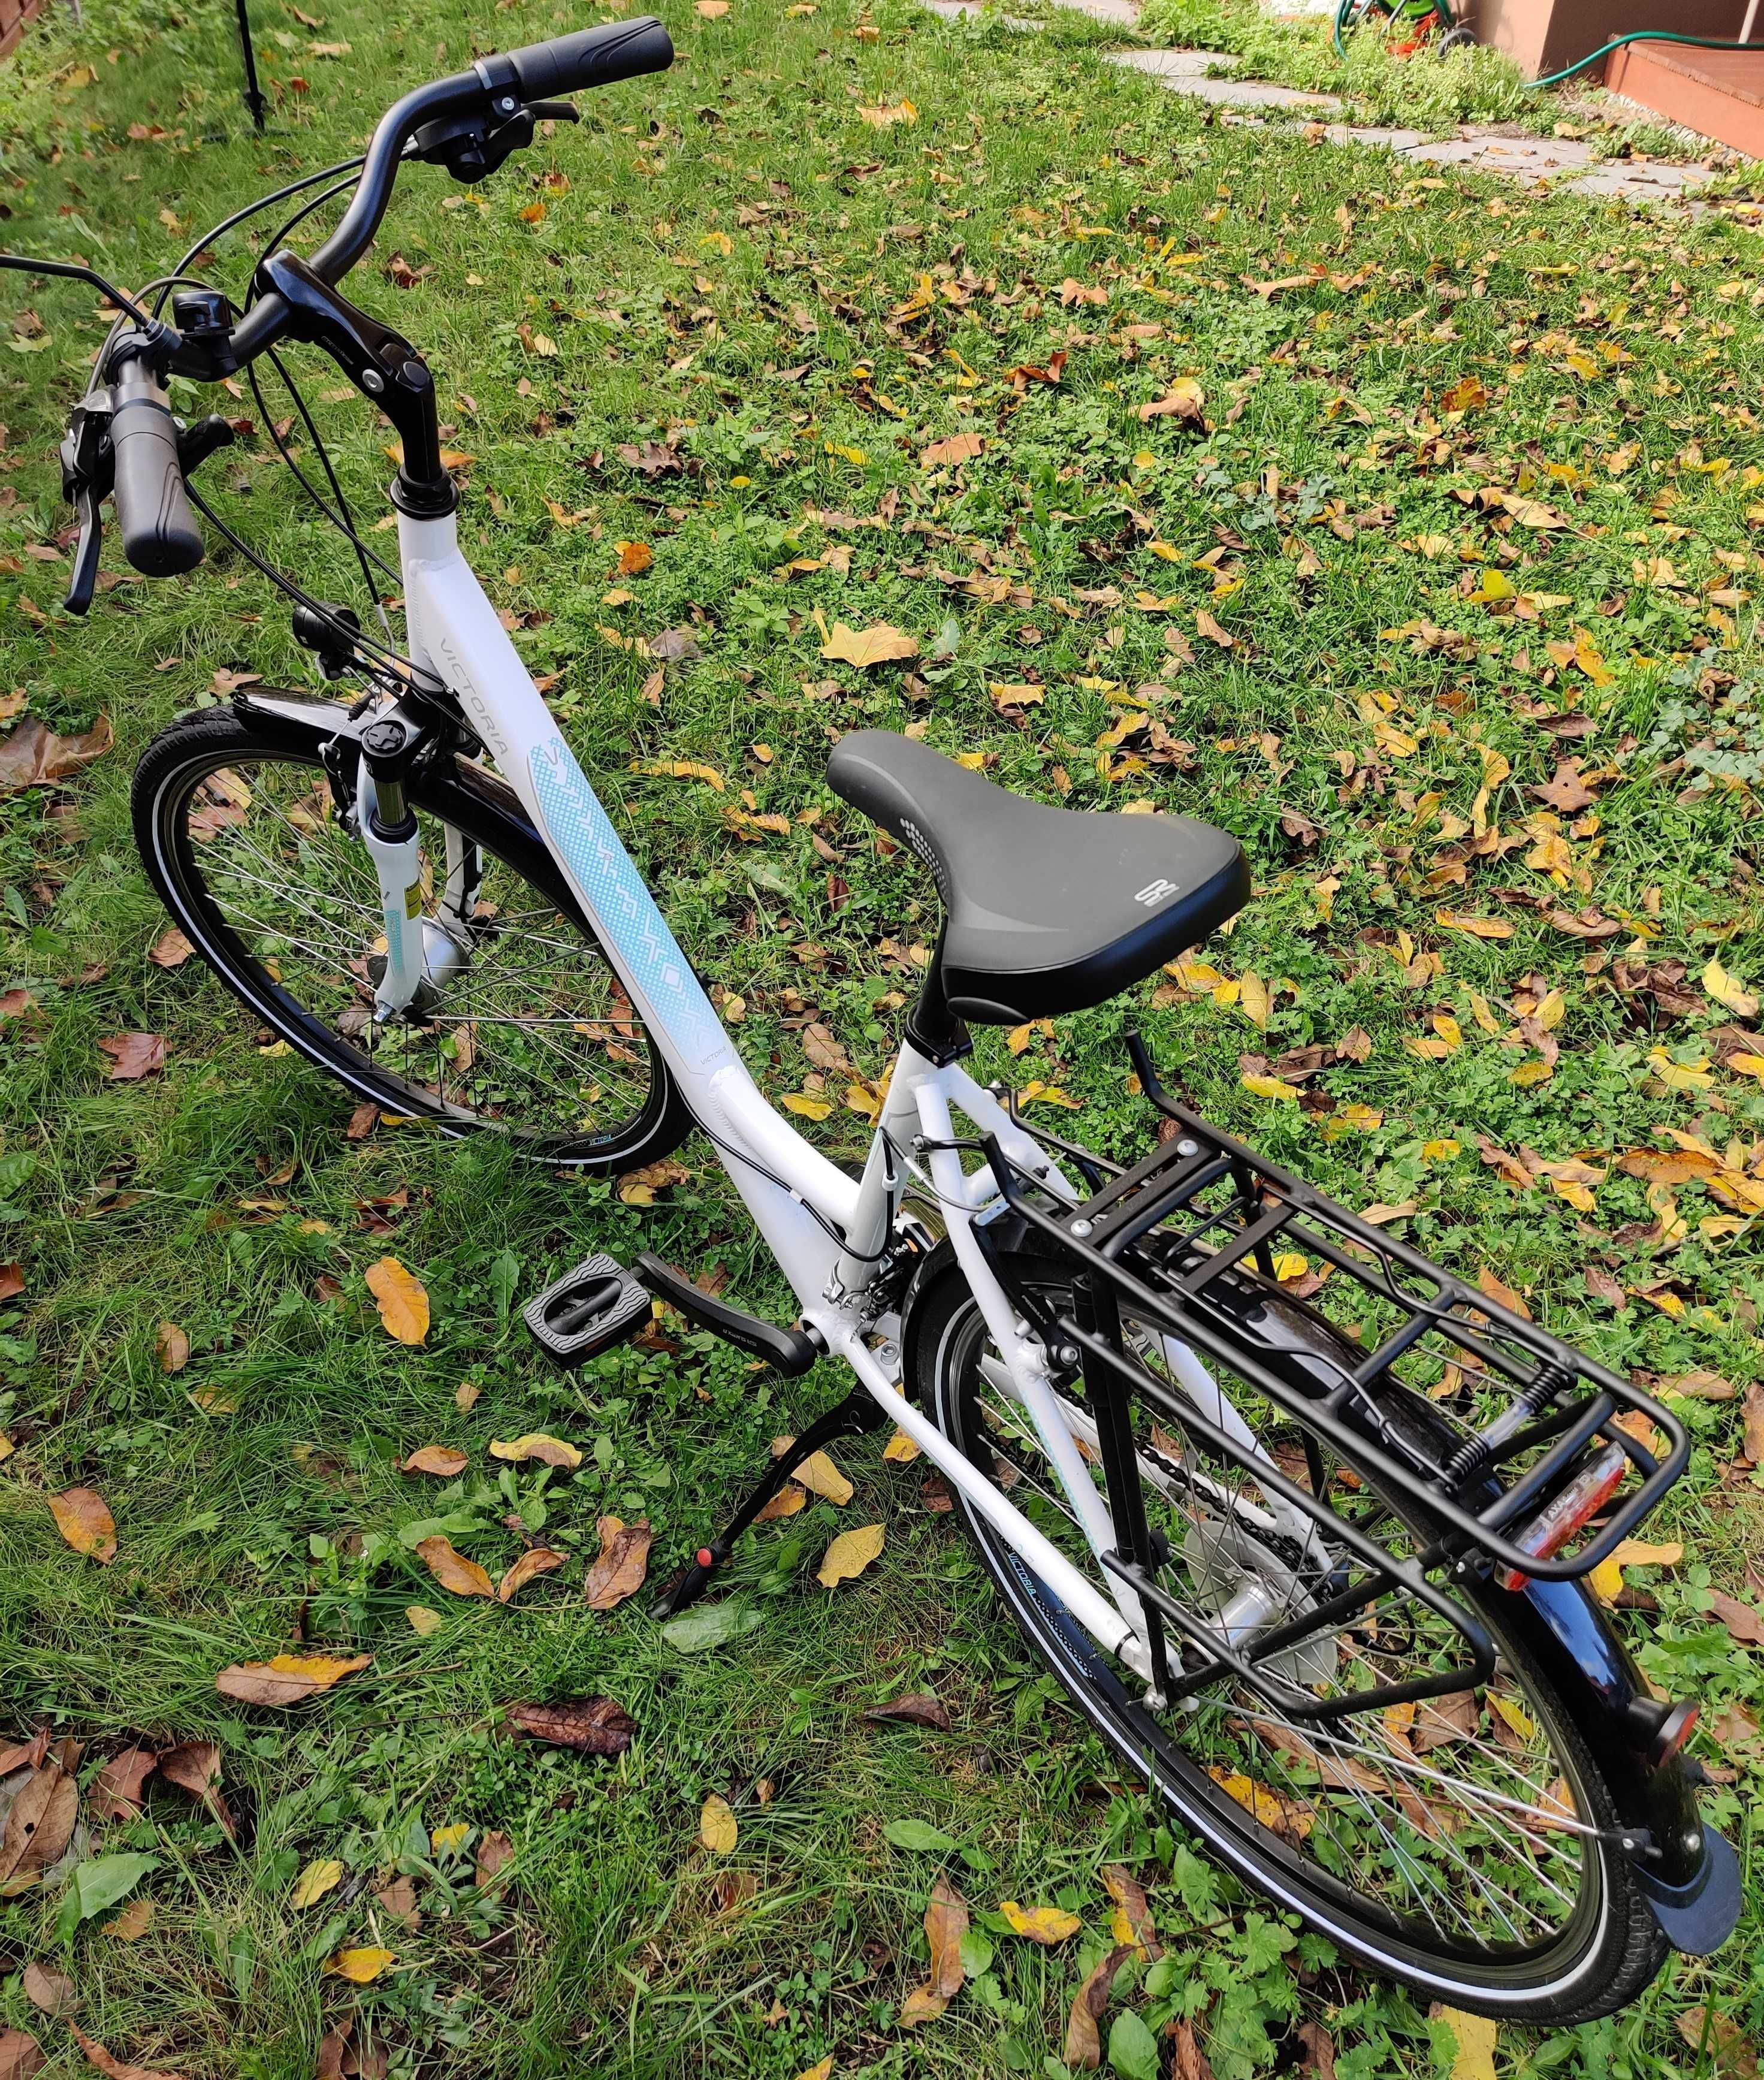 Damski rower trekingowy Victoria 2.7 - rozmiar S - nowy